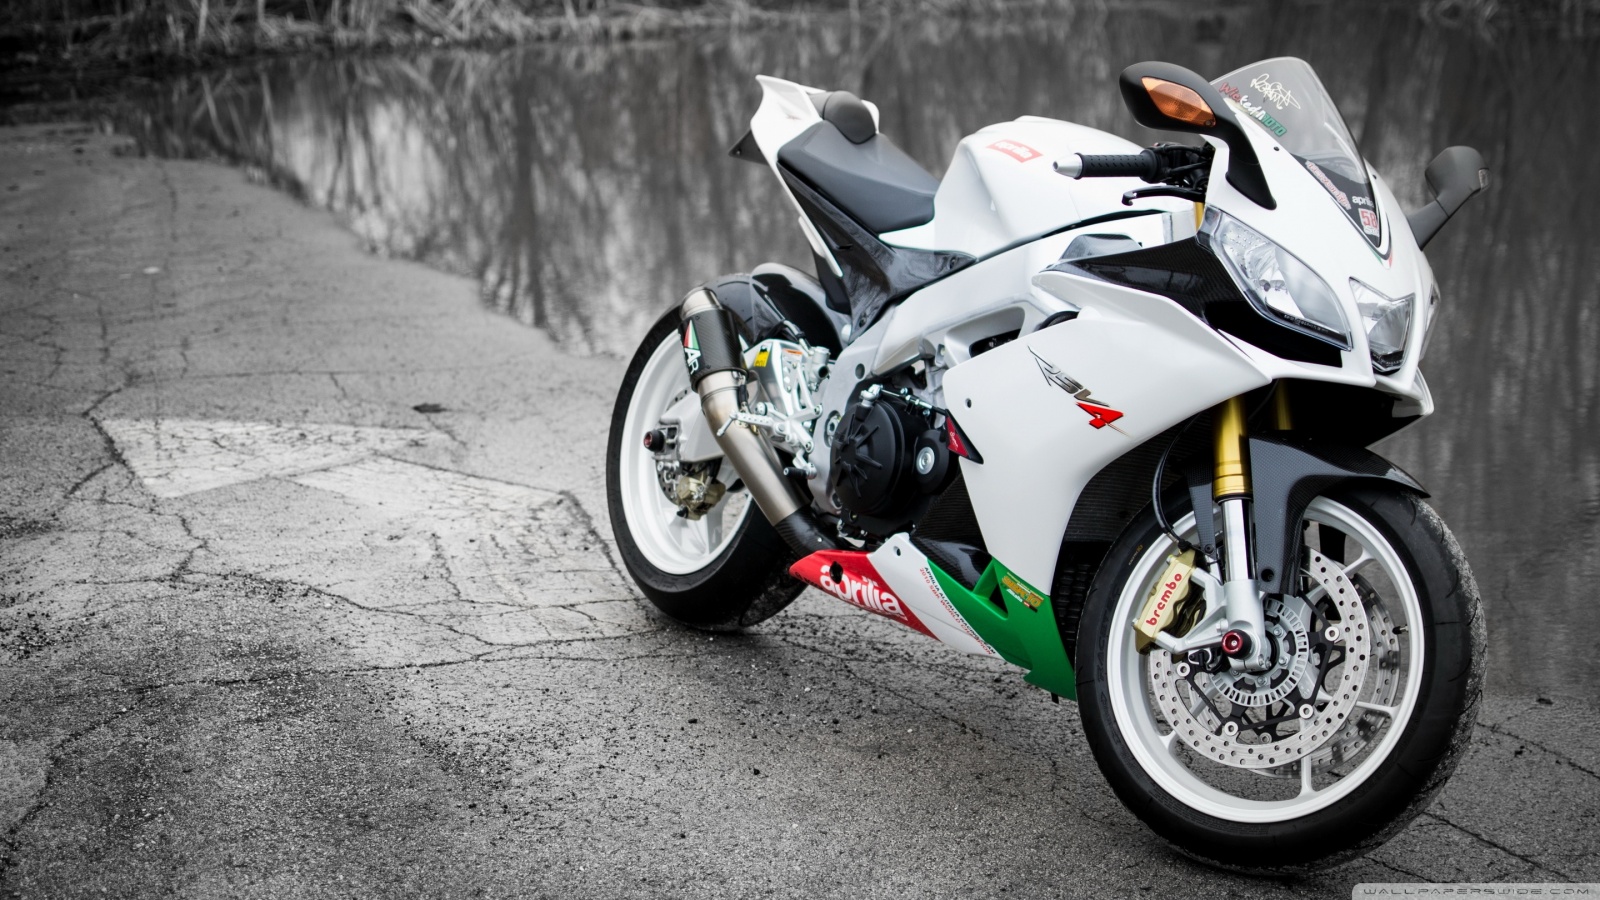 Aprilia RSV4 White Motorcycle ❤ 4K HD Desktop Wallpaper for 4K